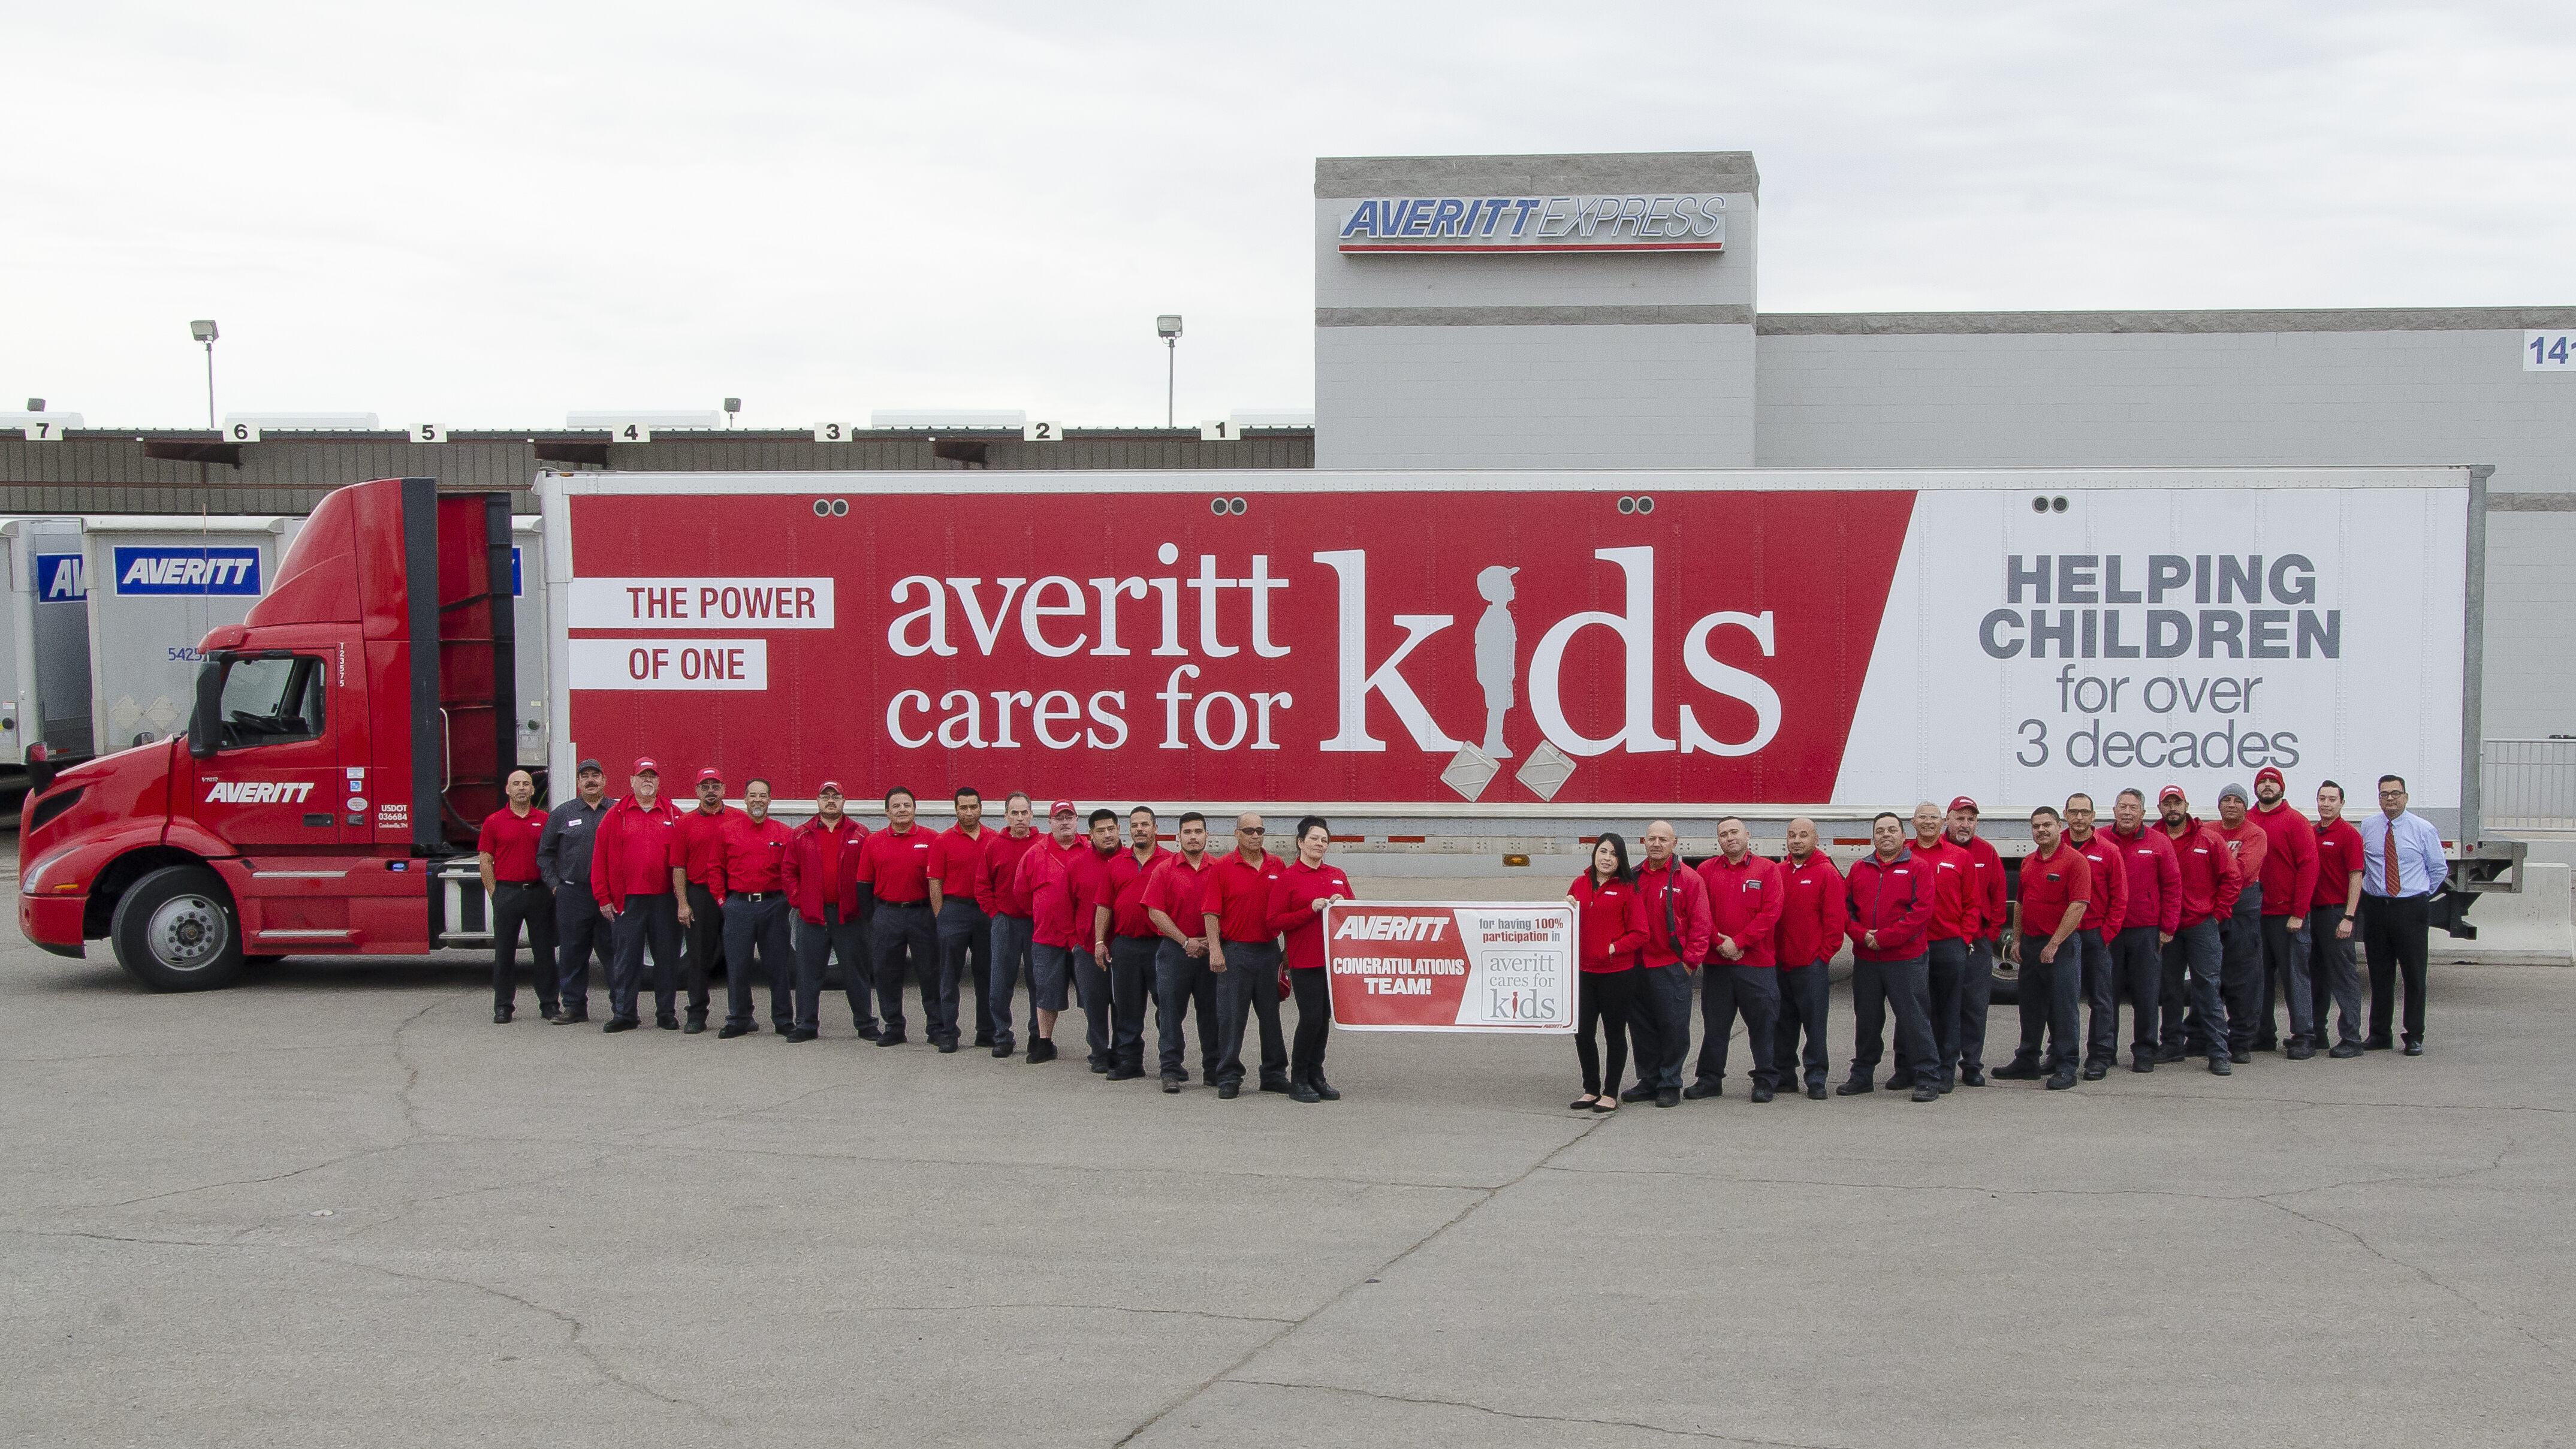 Averitt Cares for Kids